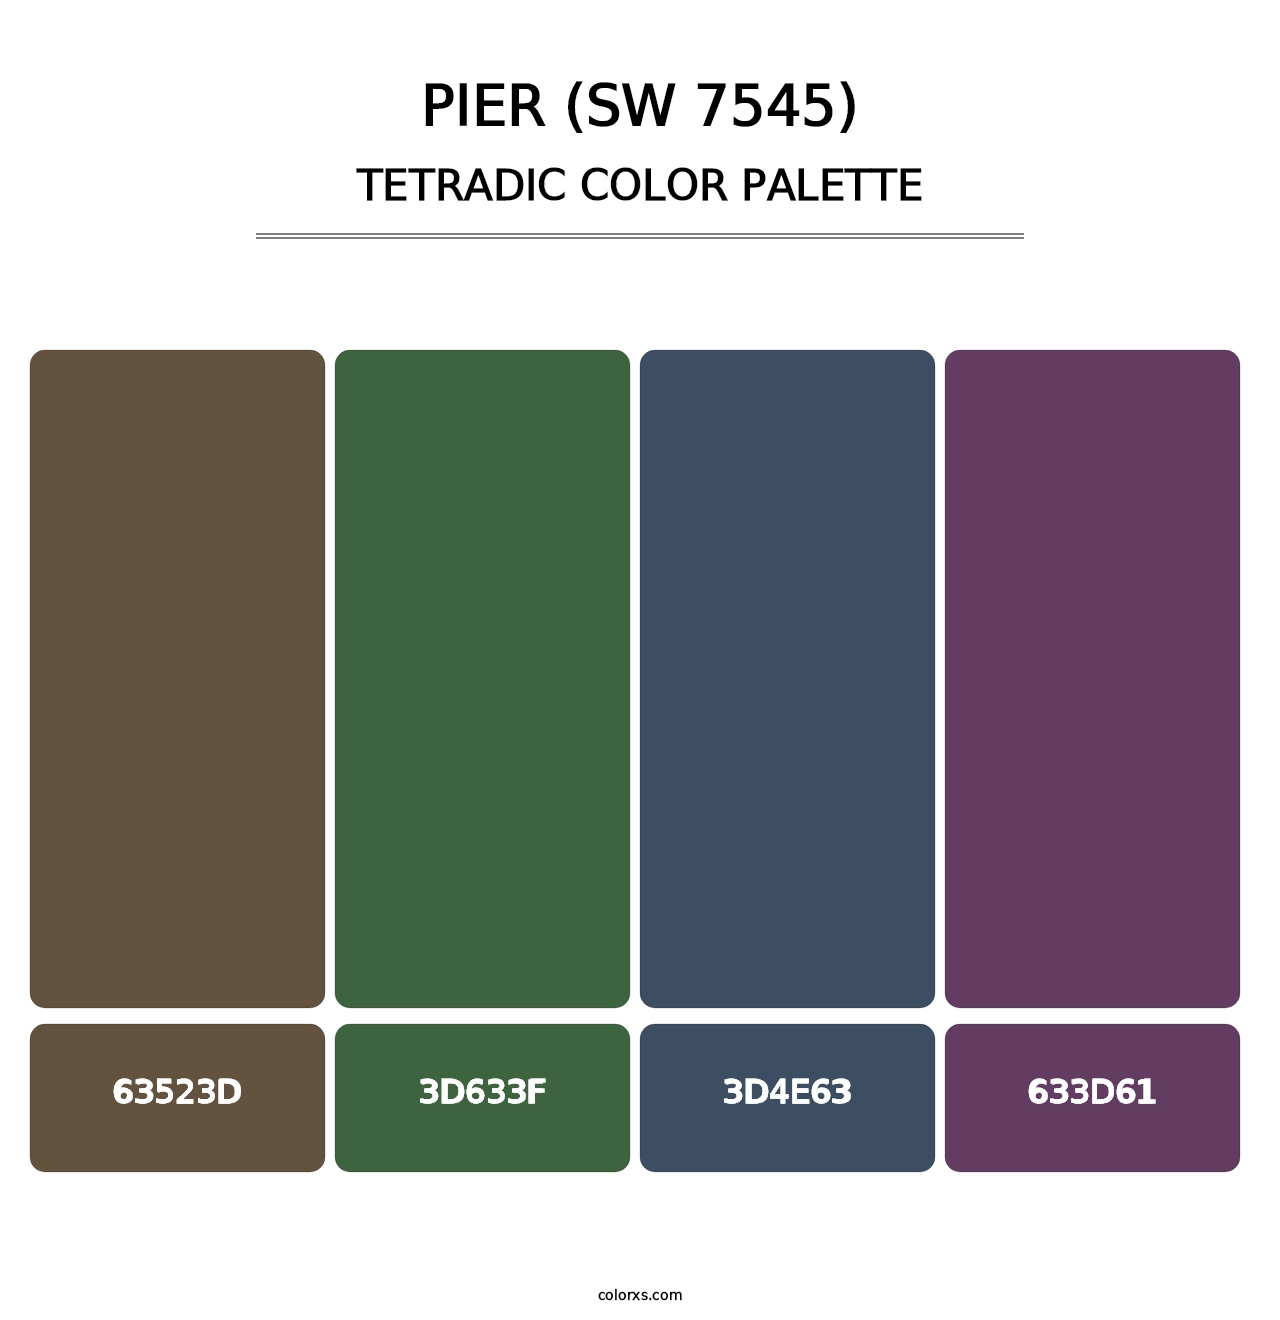 Pier (SW 7545) - Tetradic Color Palette